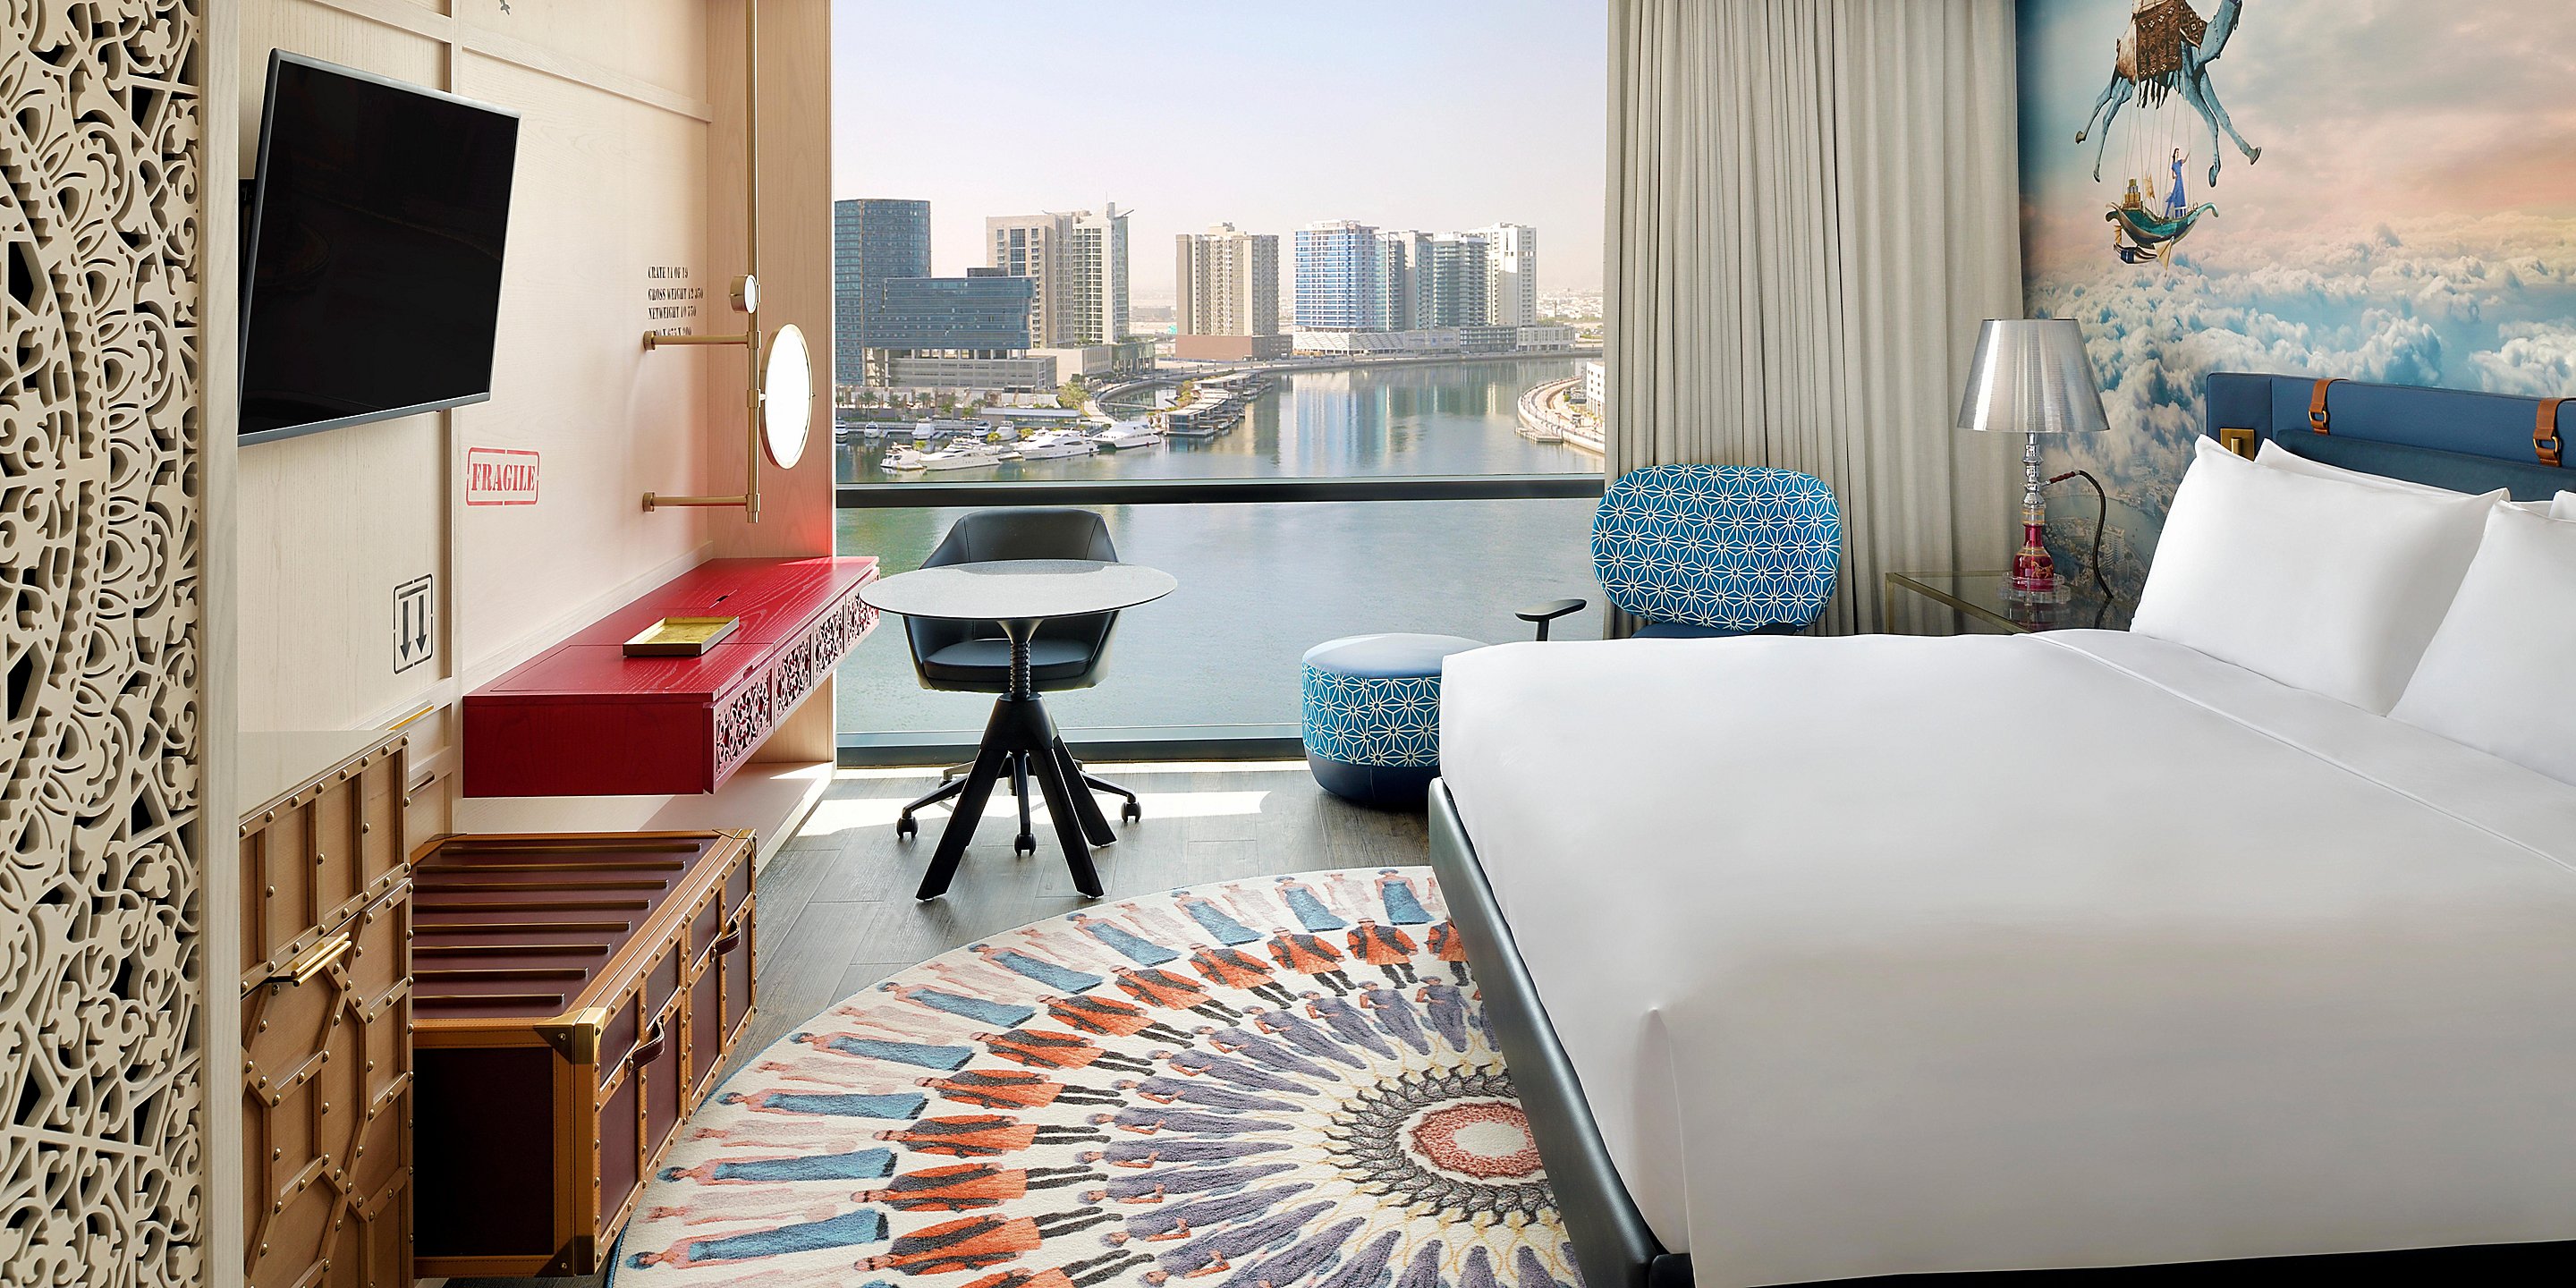 Chine 2021 Mobilier de chambre à coucher d'hôtel 5 étoiles luxueux et moderne pour l'hôtel